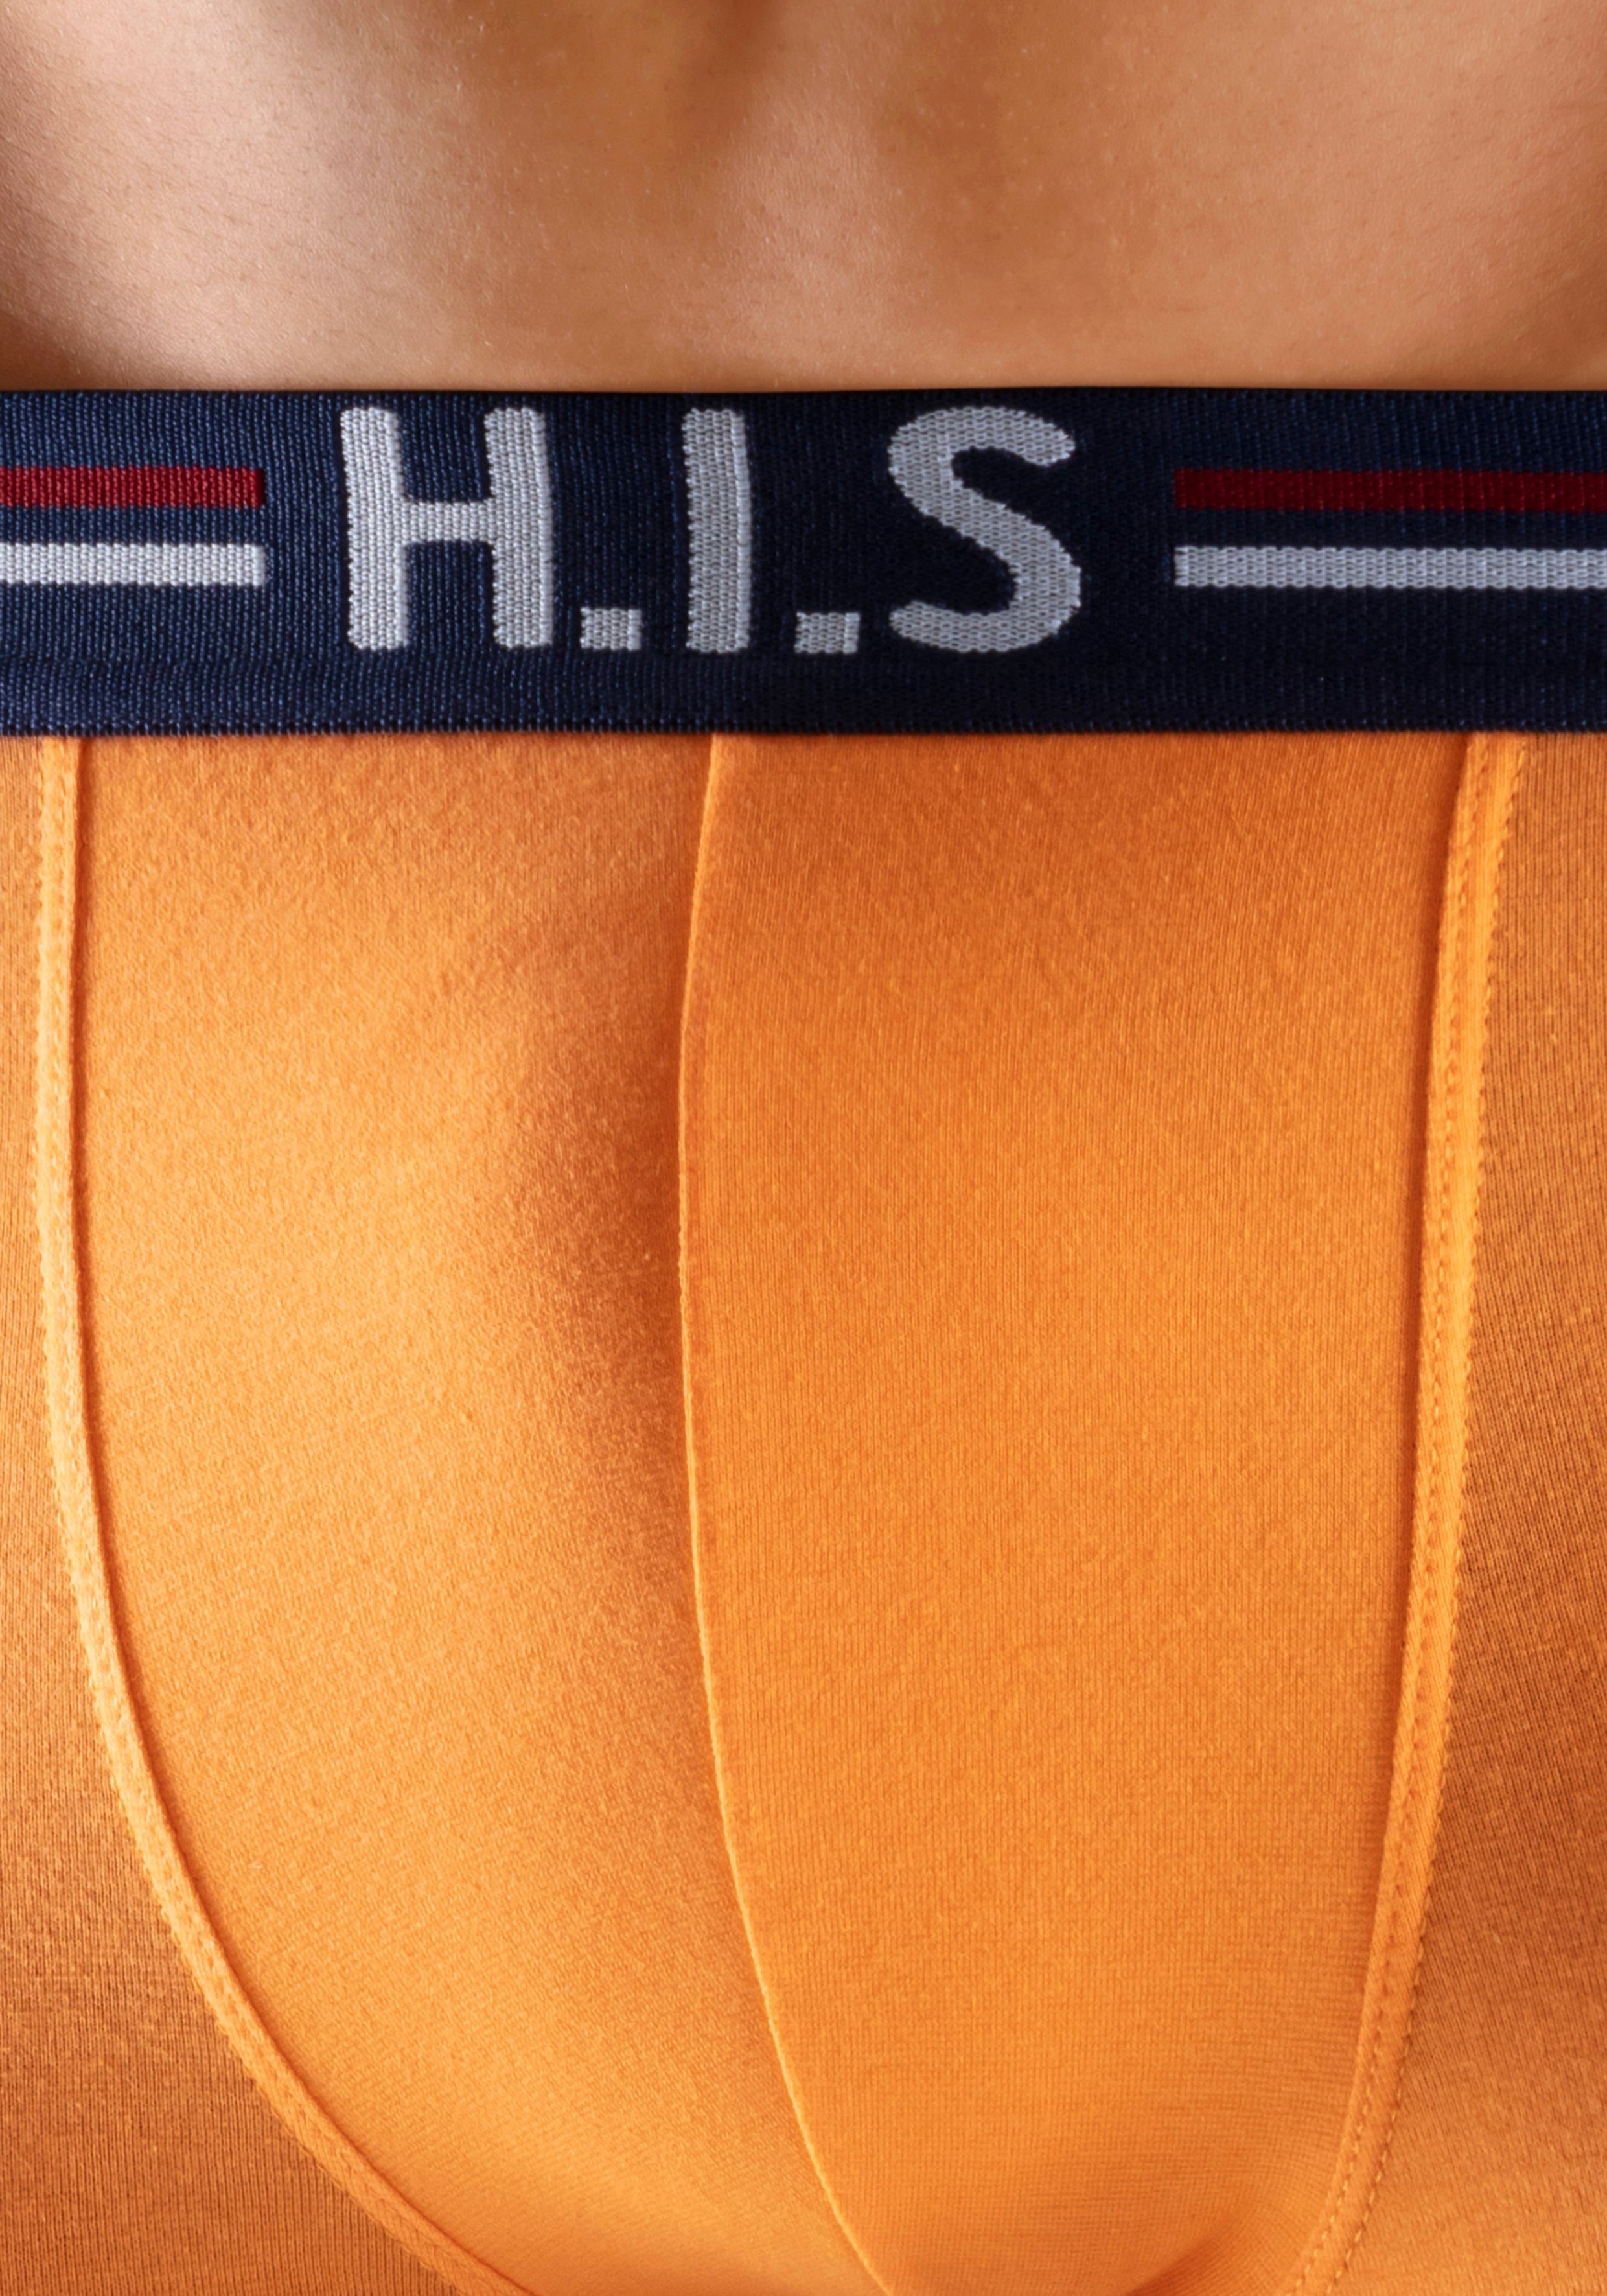 (Packung, orange, 5-St) Markenlogo Streifen und H.I.S schwarz in Boxershorts grau-meliert, mint, Hipster-Form im navy, mit Bund